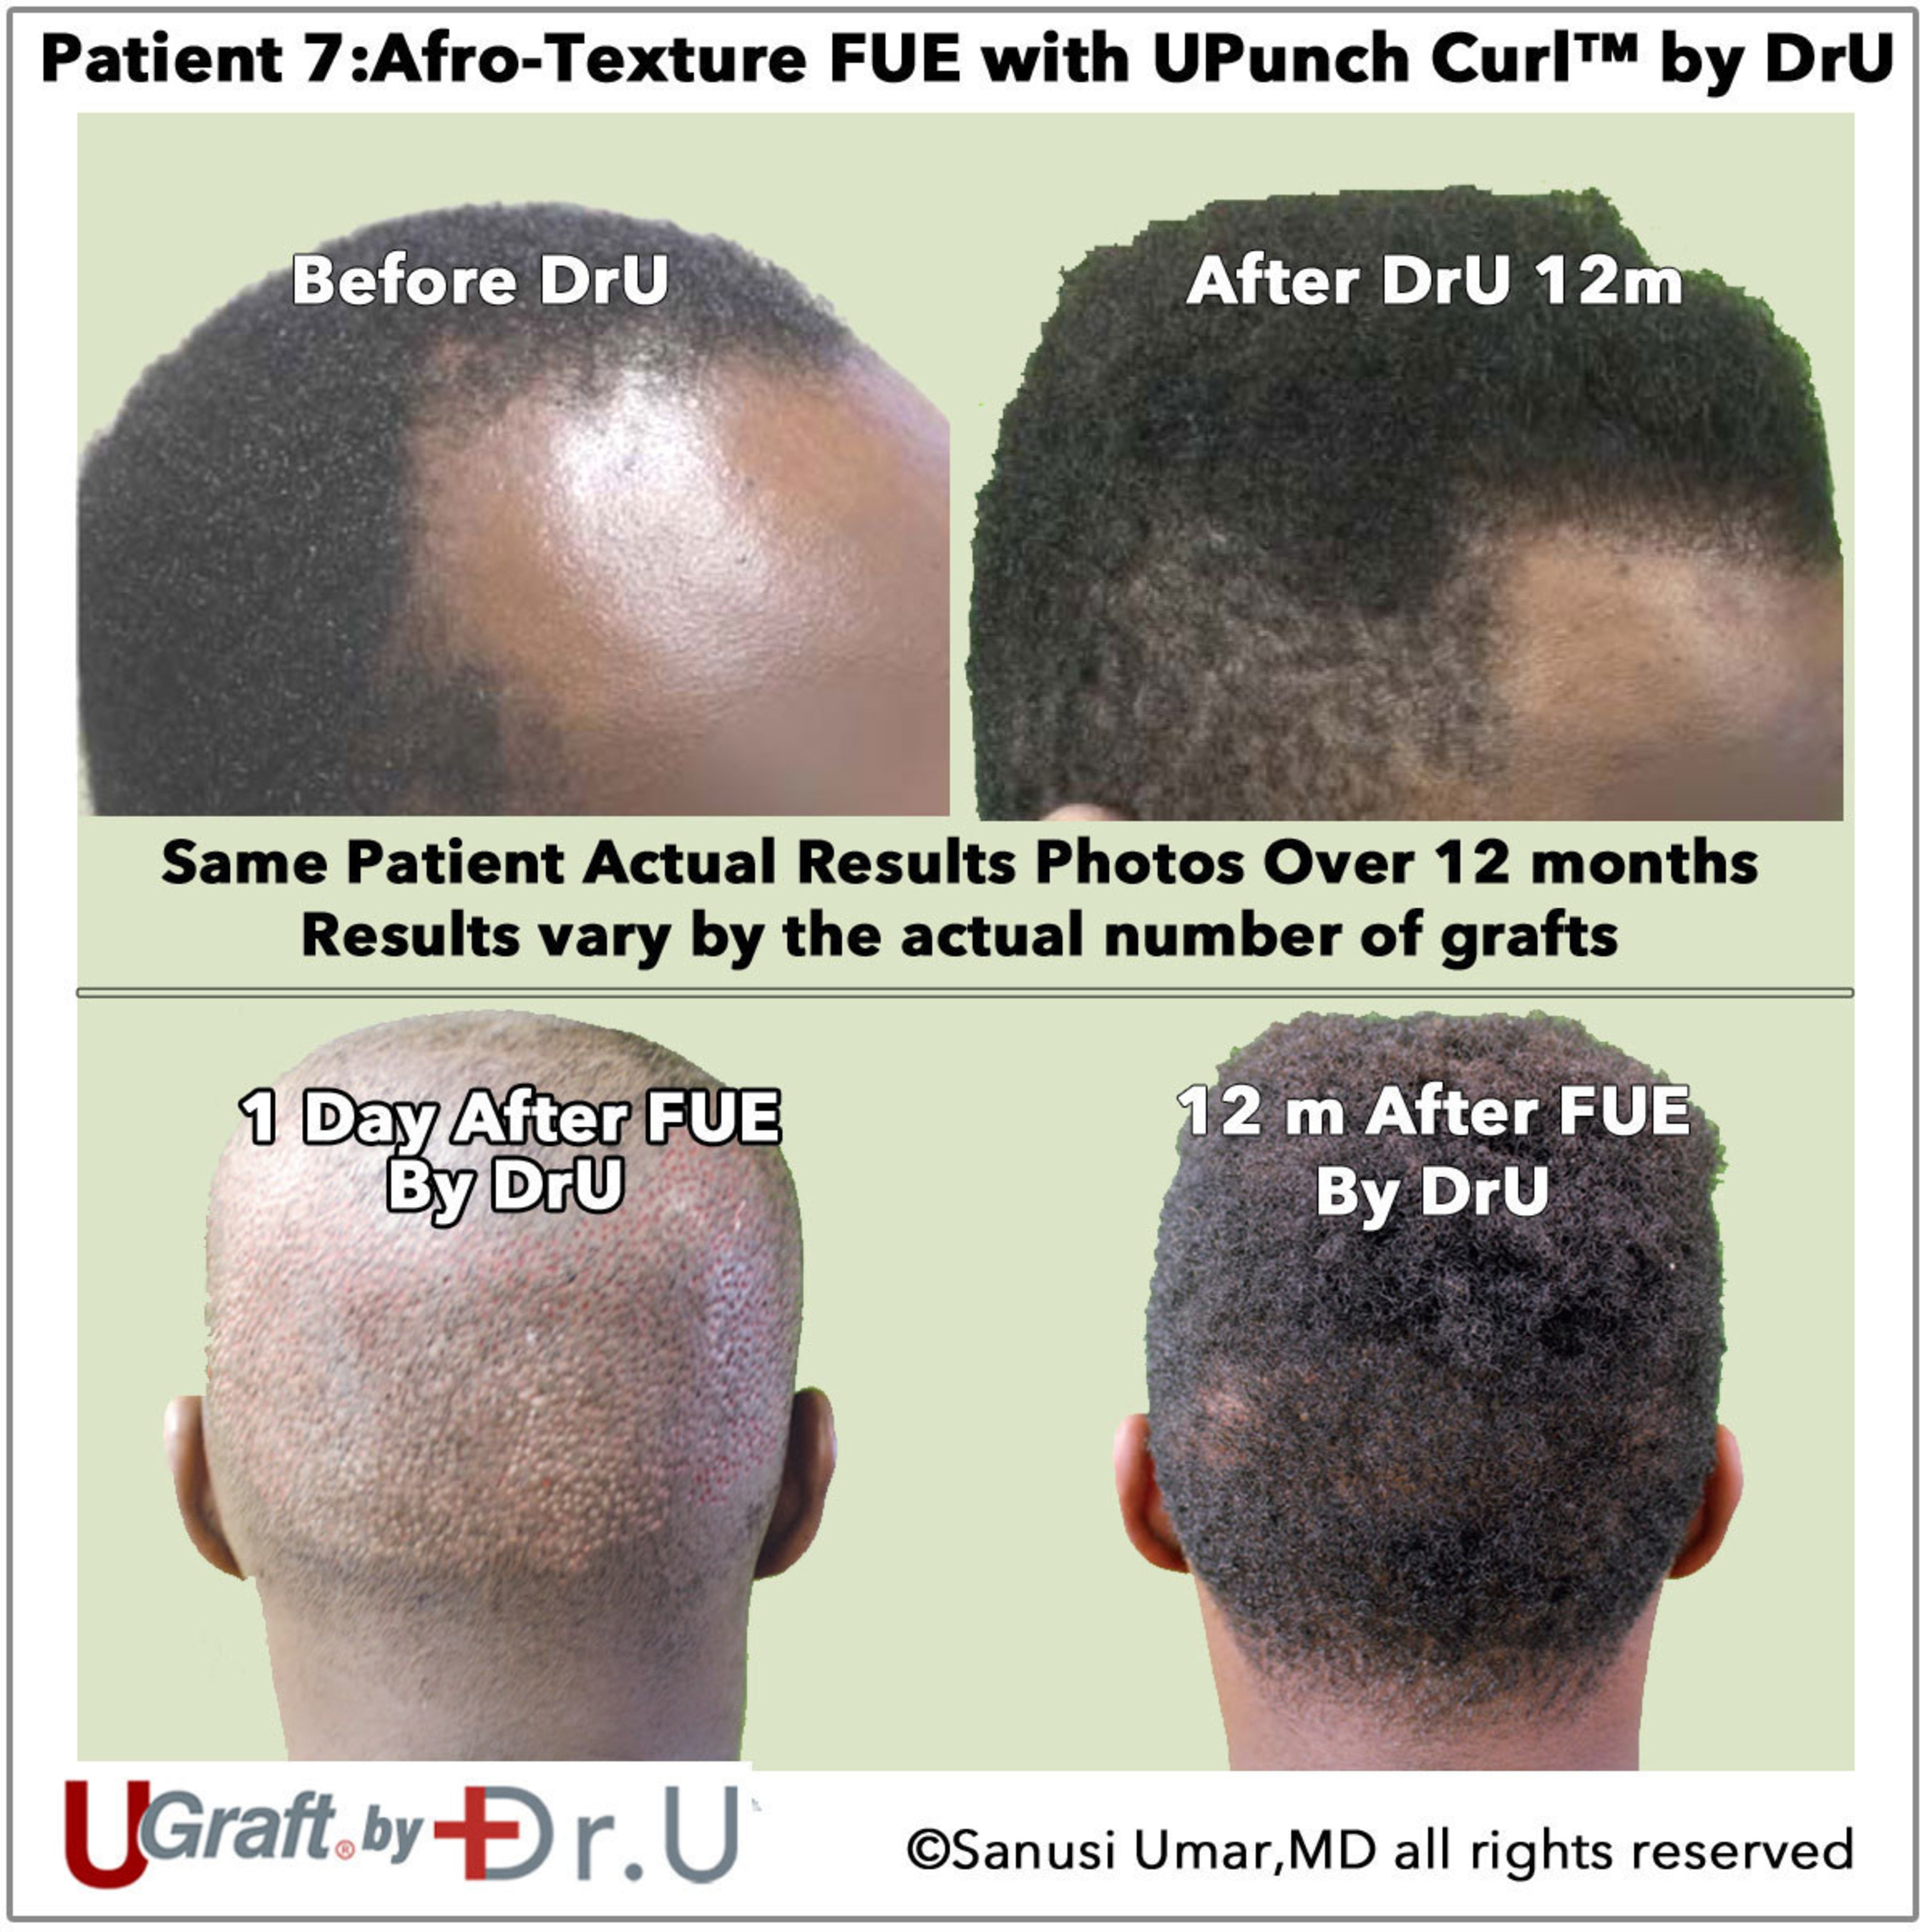 Paciente real que passou por FUE com transplante capilar de textura africana do Dr. Sanusi Umar após 12 meses de crescimento de cabelo.